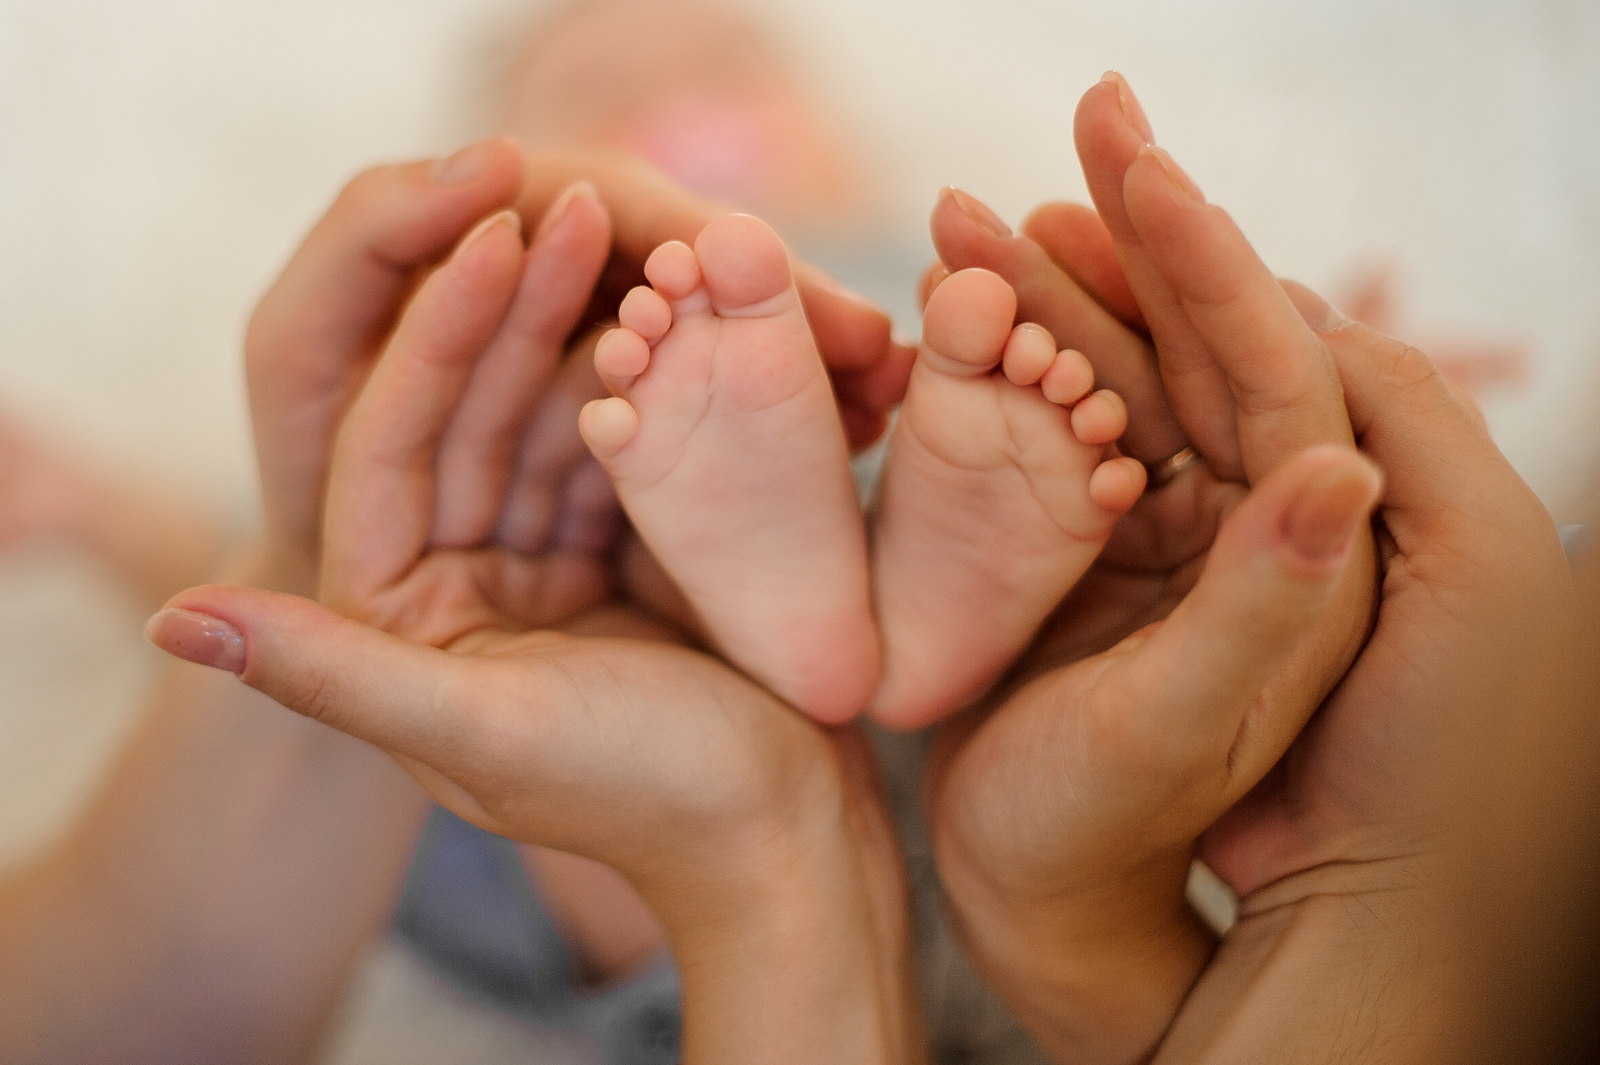 Baby Feet in Hands of Parents